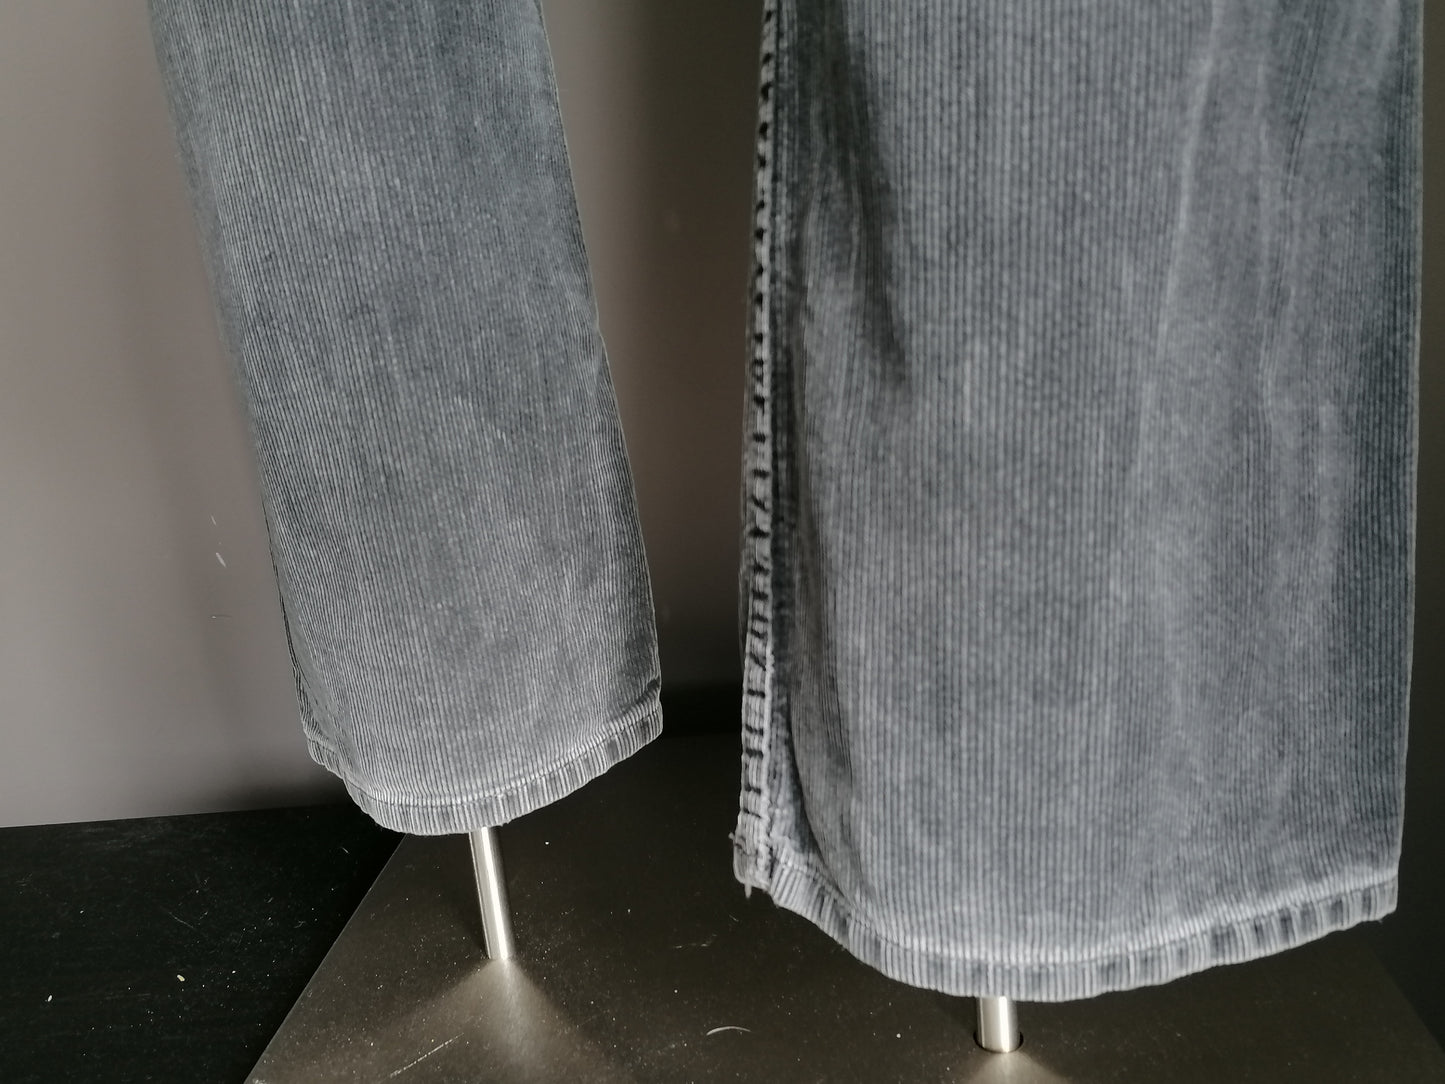 Pantaloni toracnocali a capo. Colorato grigio scuro. Taglia W30 - L34. Tipo tasca bassa.